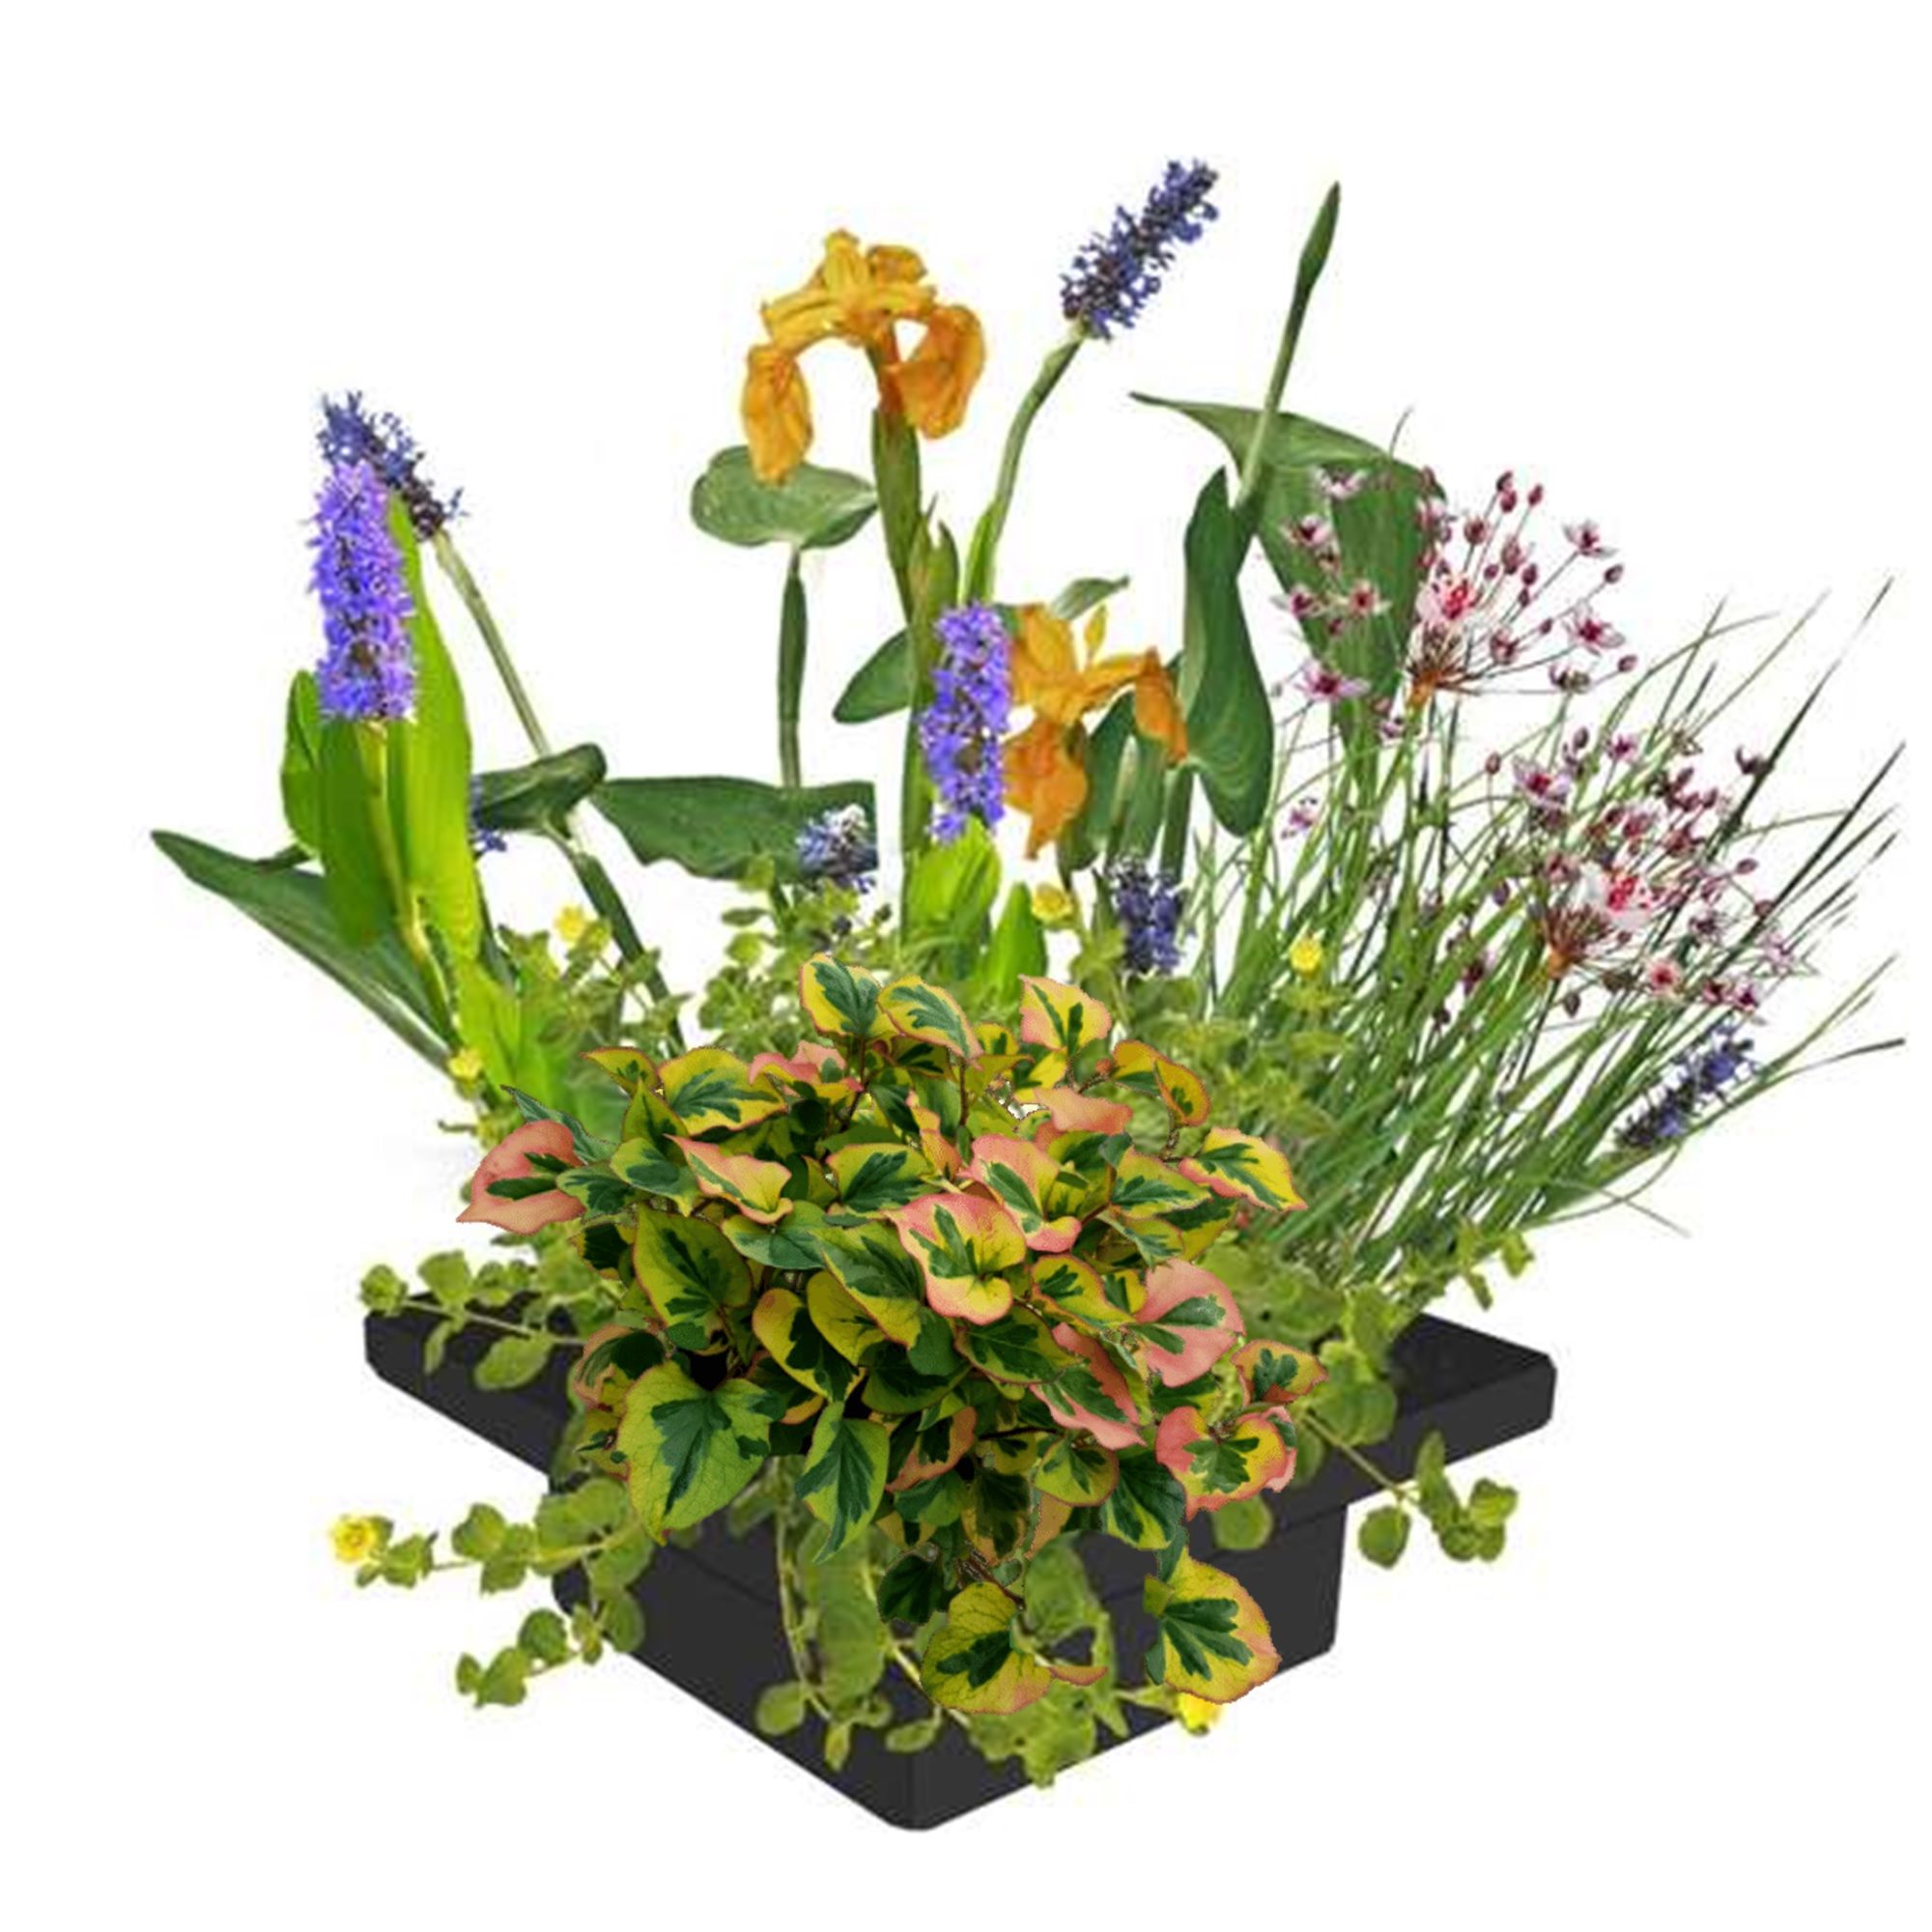 vdvelde.com - Îlot de plantes flottantes - DIY - 4 plantes aquatiques fleuries - anneau flottant inclus